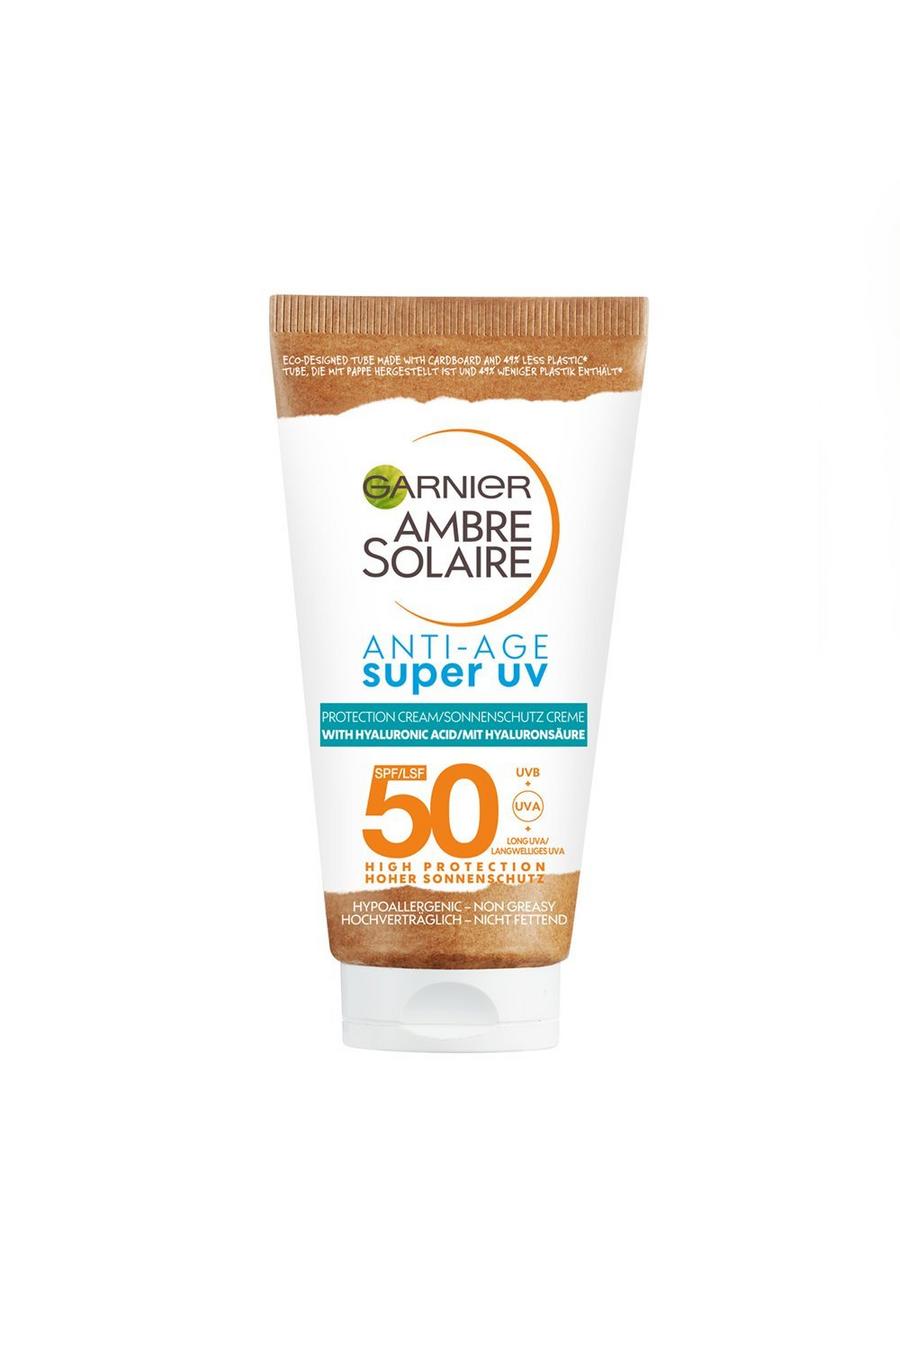 White Garnier Ambre Solaire Anti-age Super UV Face Protection Cream SPF50 50ml (SAVE 17%)